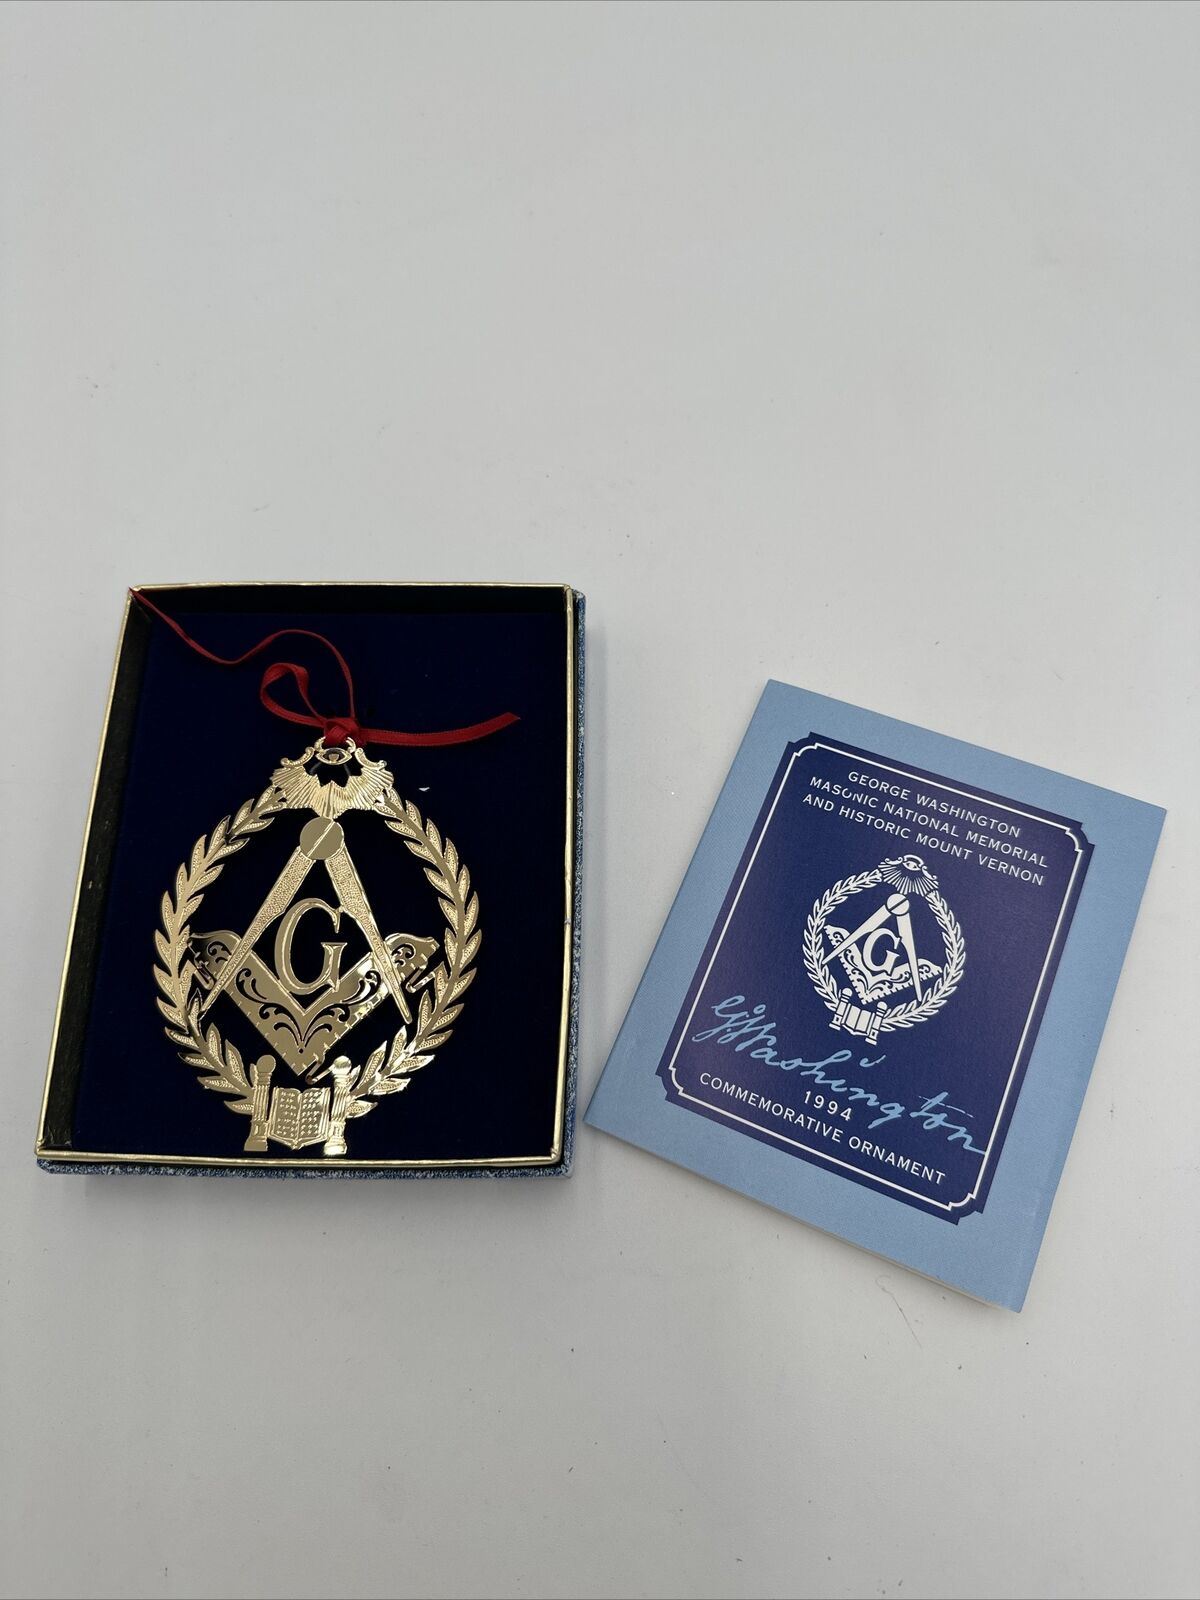 Vintage 1994 George Washington Masonic Commemorative Ornament 24K Gold Finish